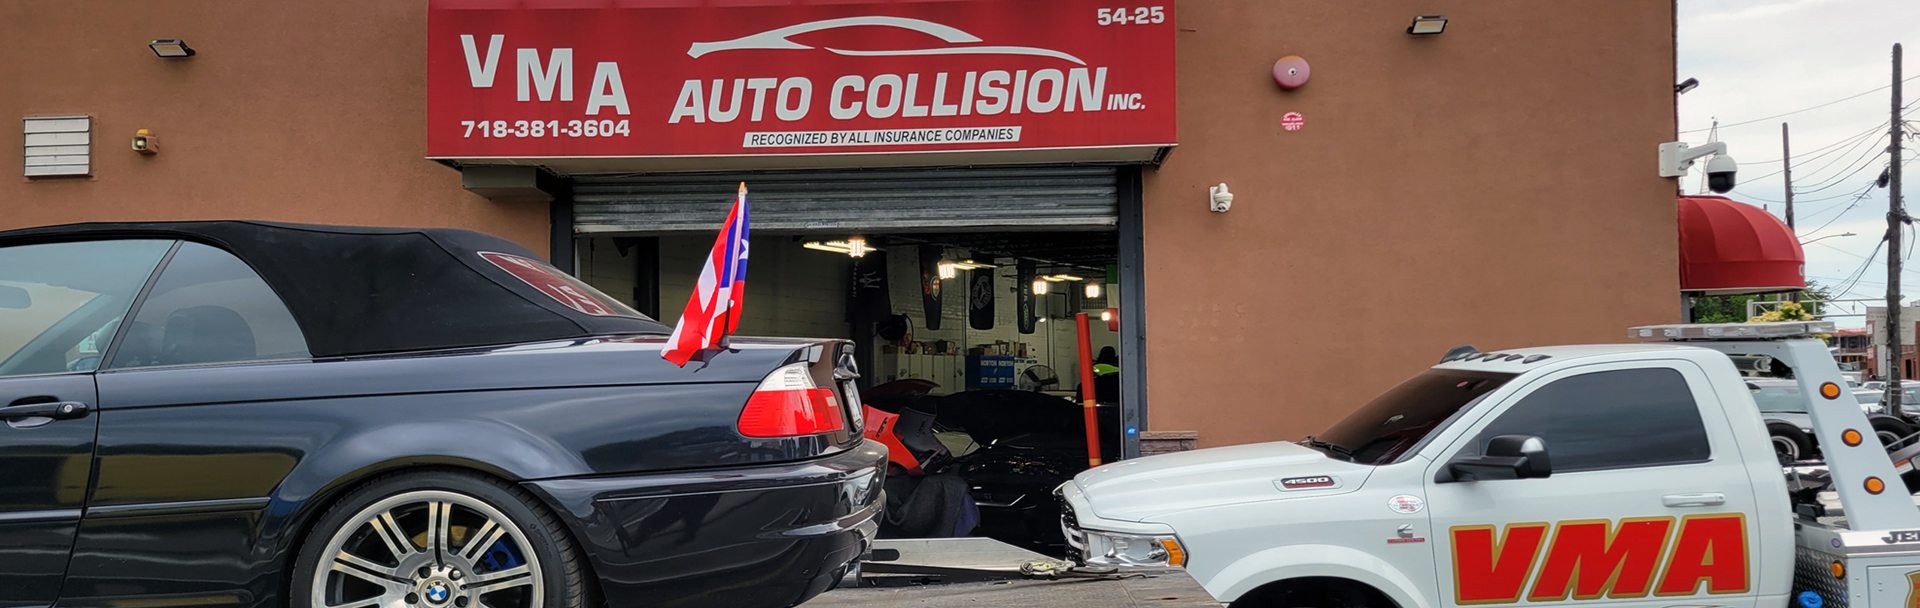 VMA Auto Collision | Auto Body Repair Specialist Main Office | Maspeth, Queens, NY | Phone: 718.381.3604